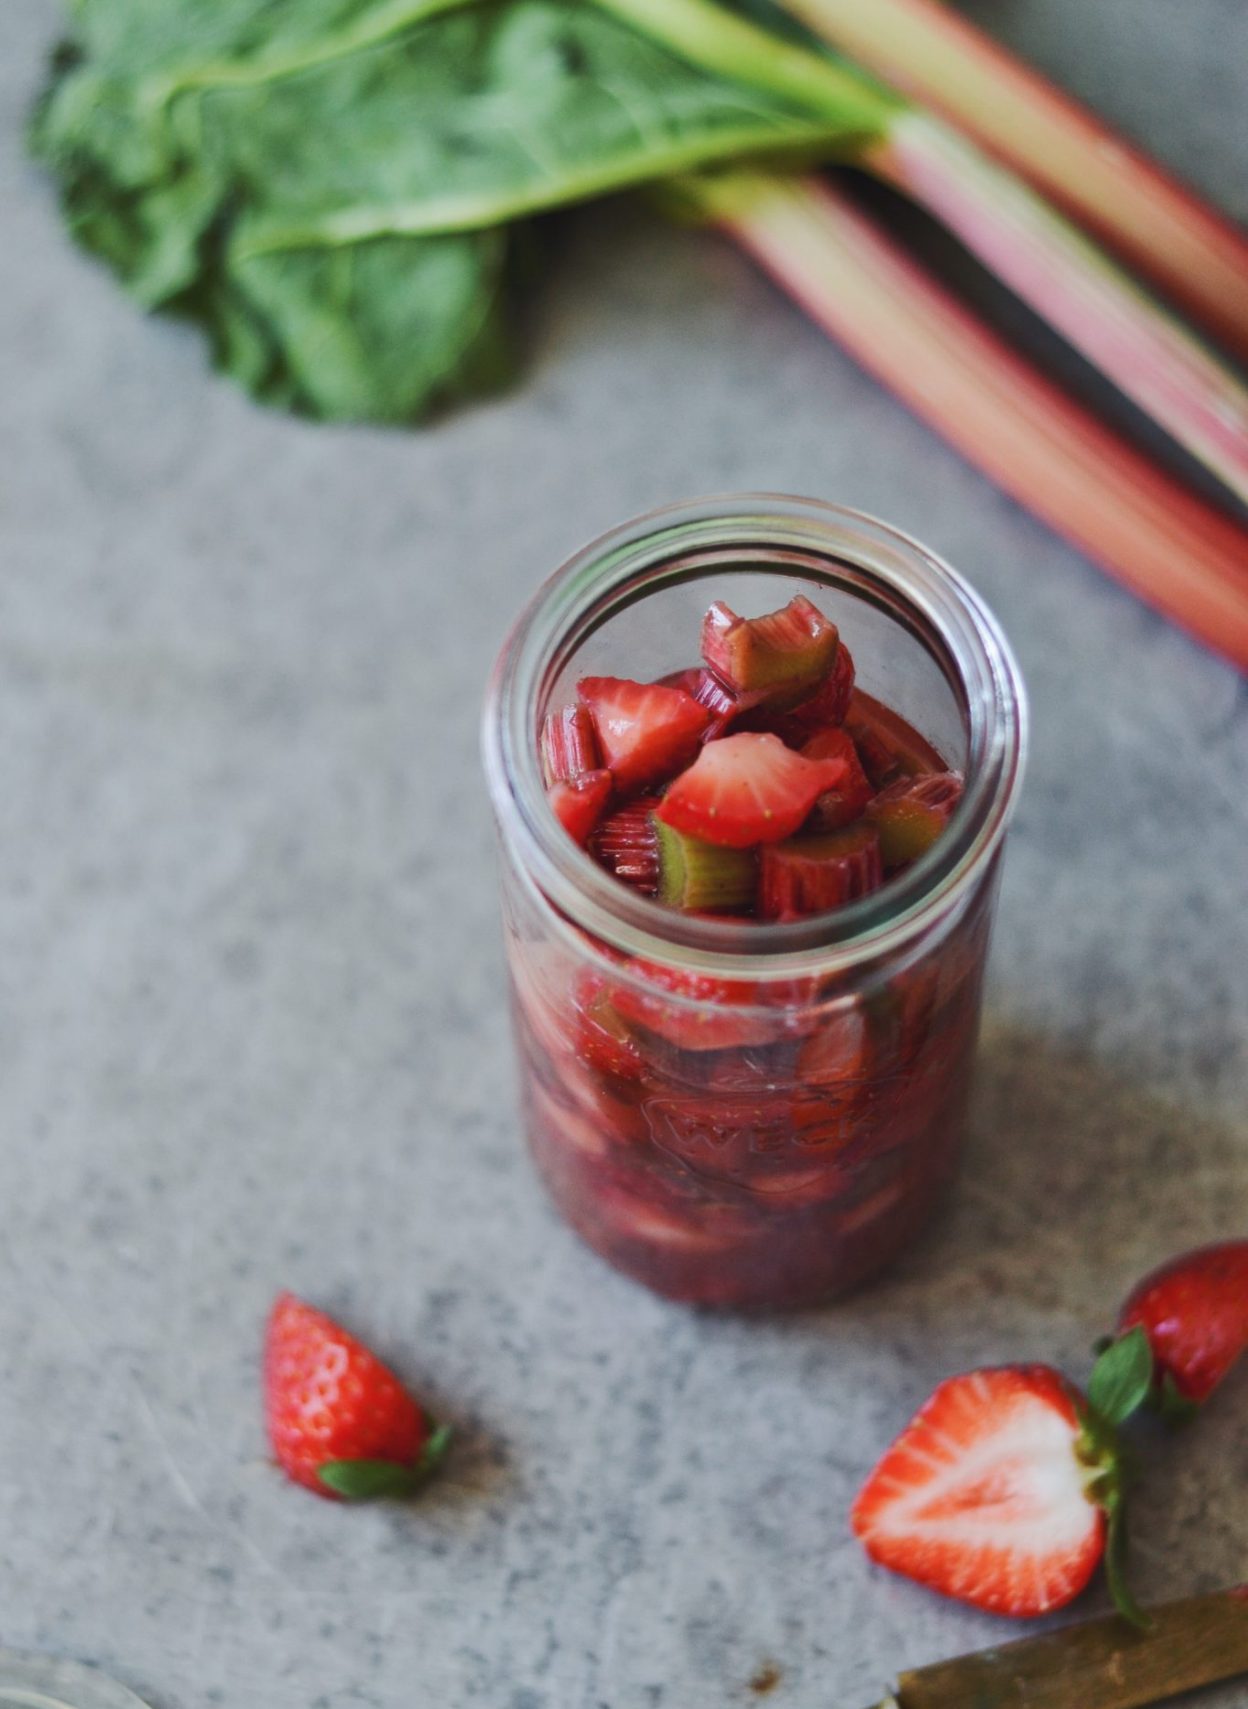 Råmarineret rabarber og jordbær med vanilje og honning